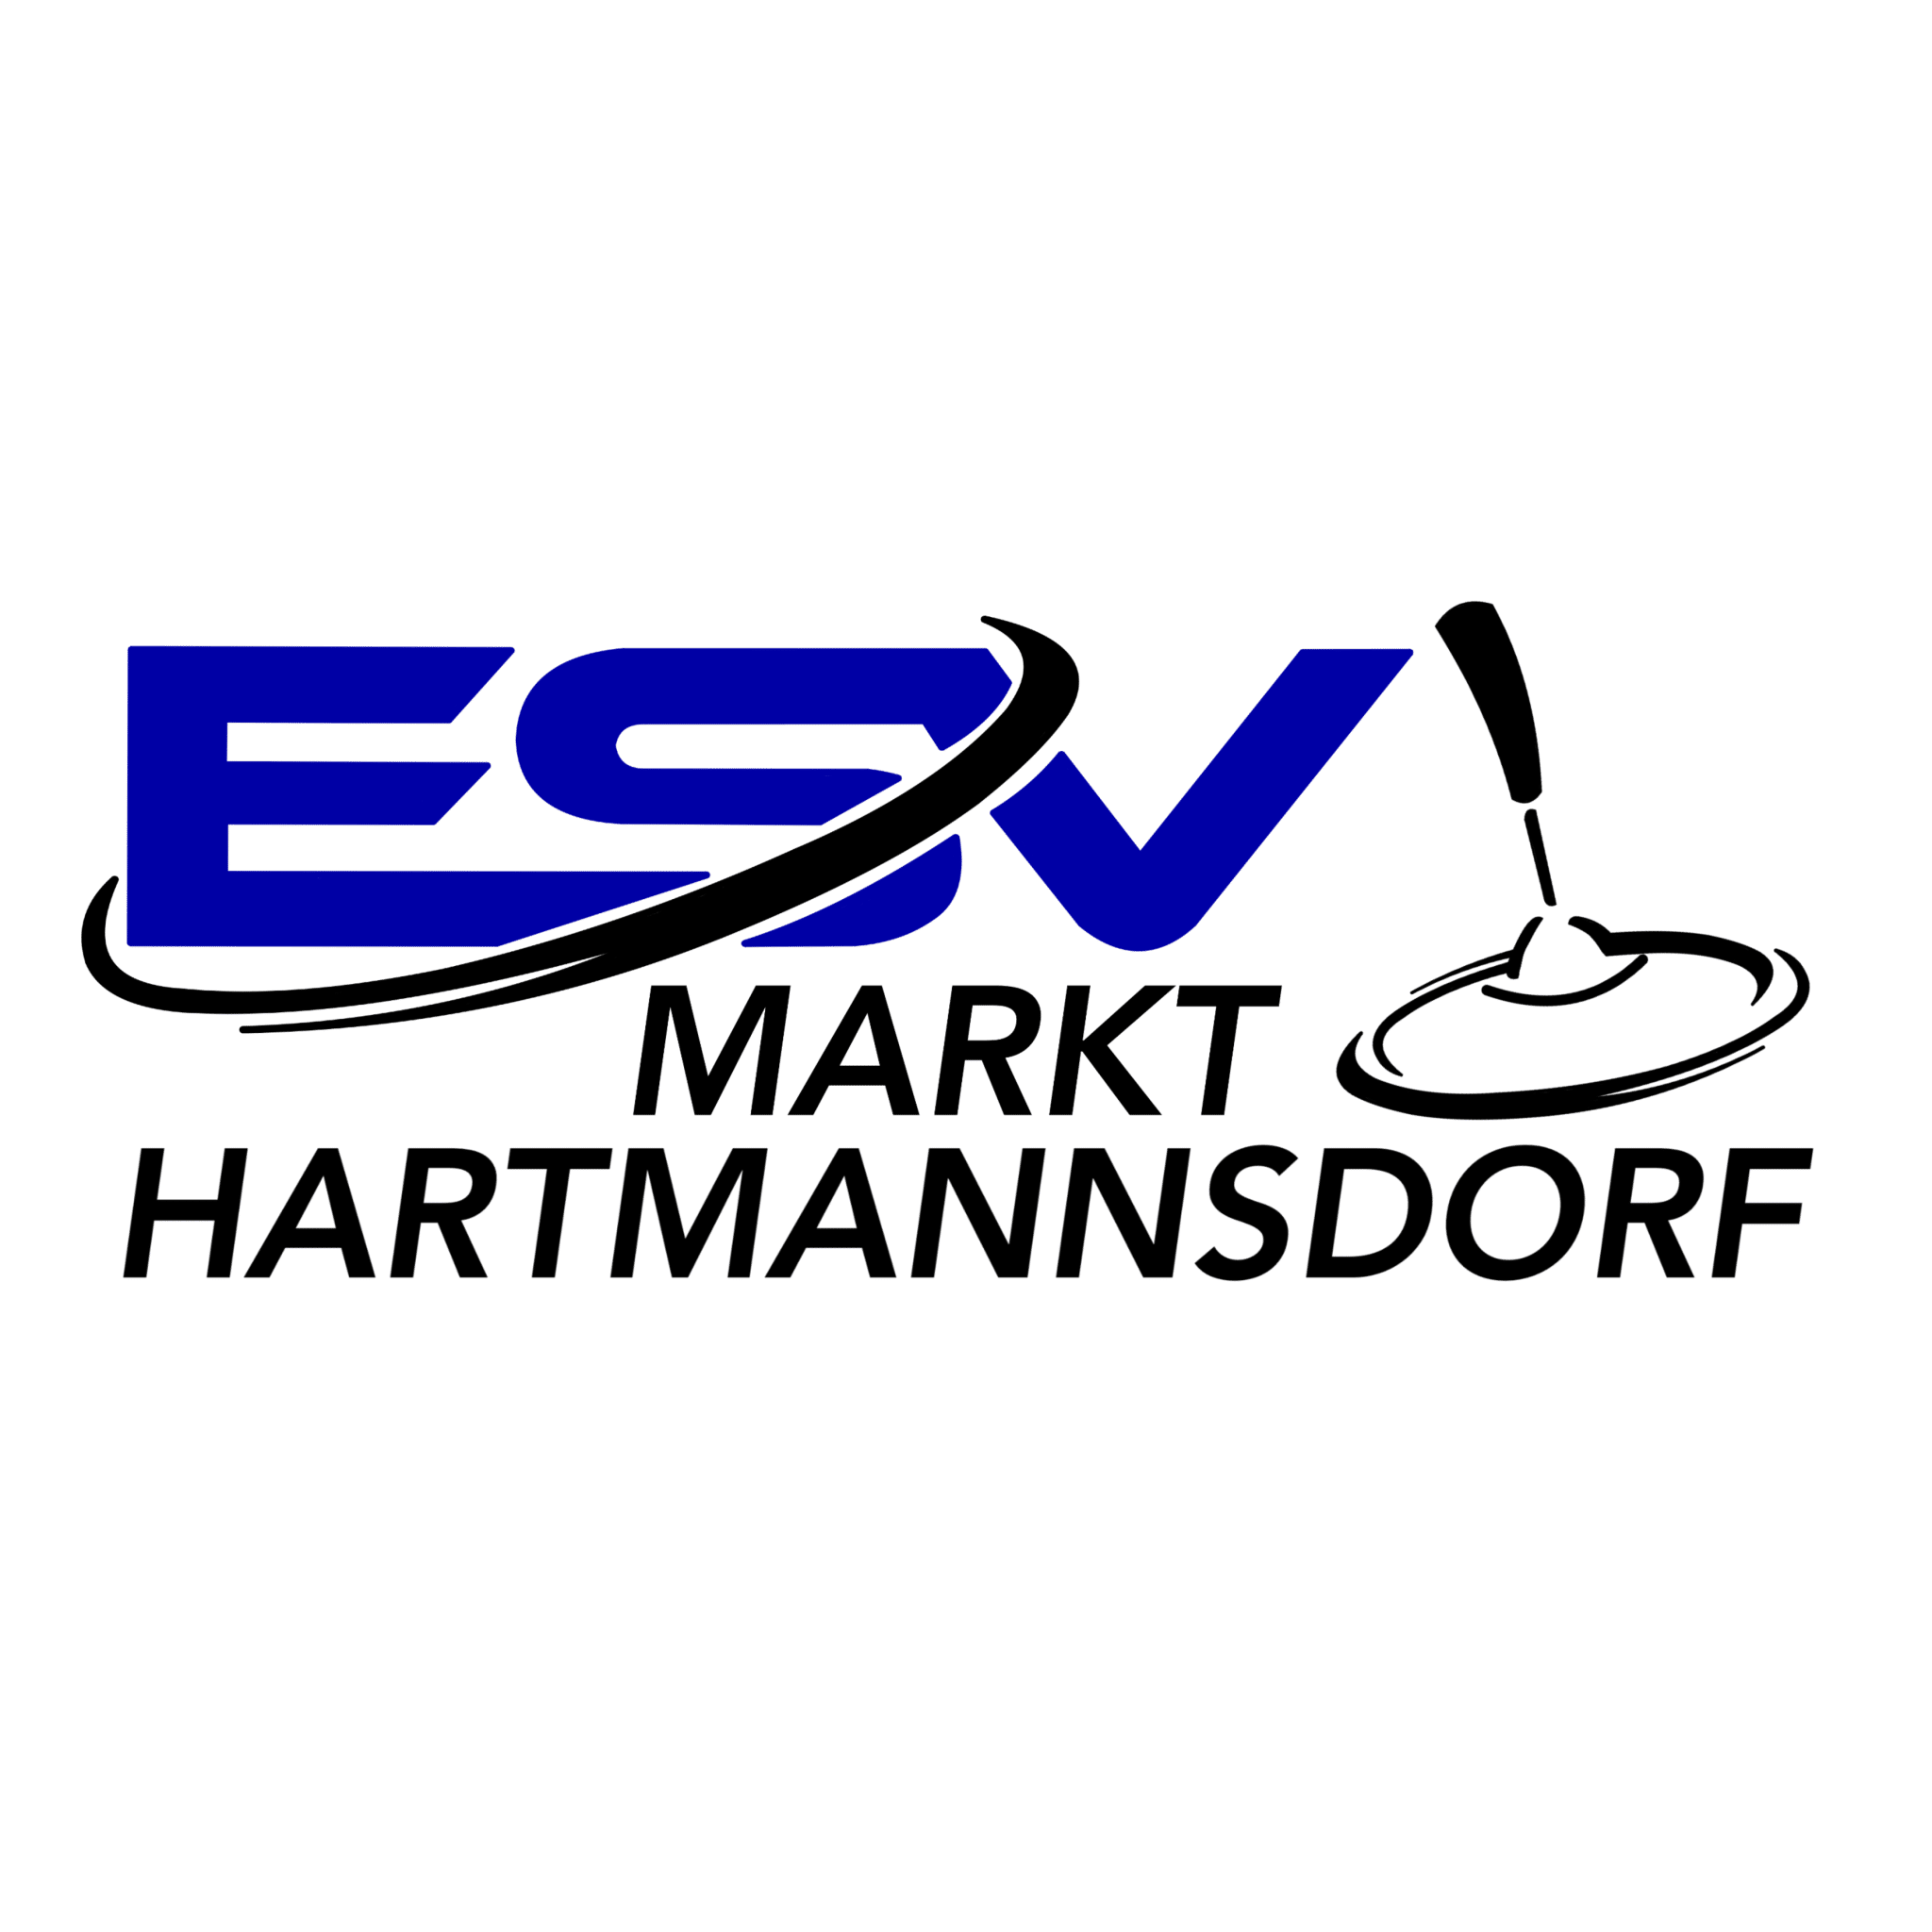 ESV Markt HARTMANNSDORF